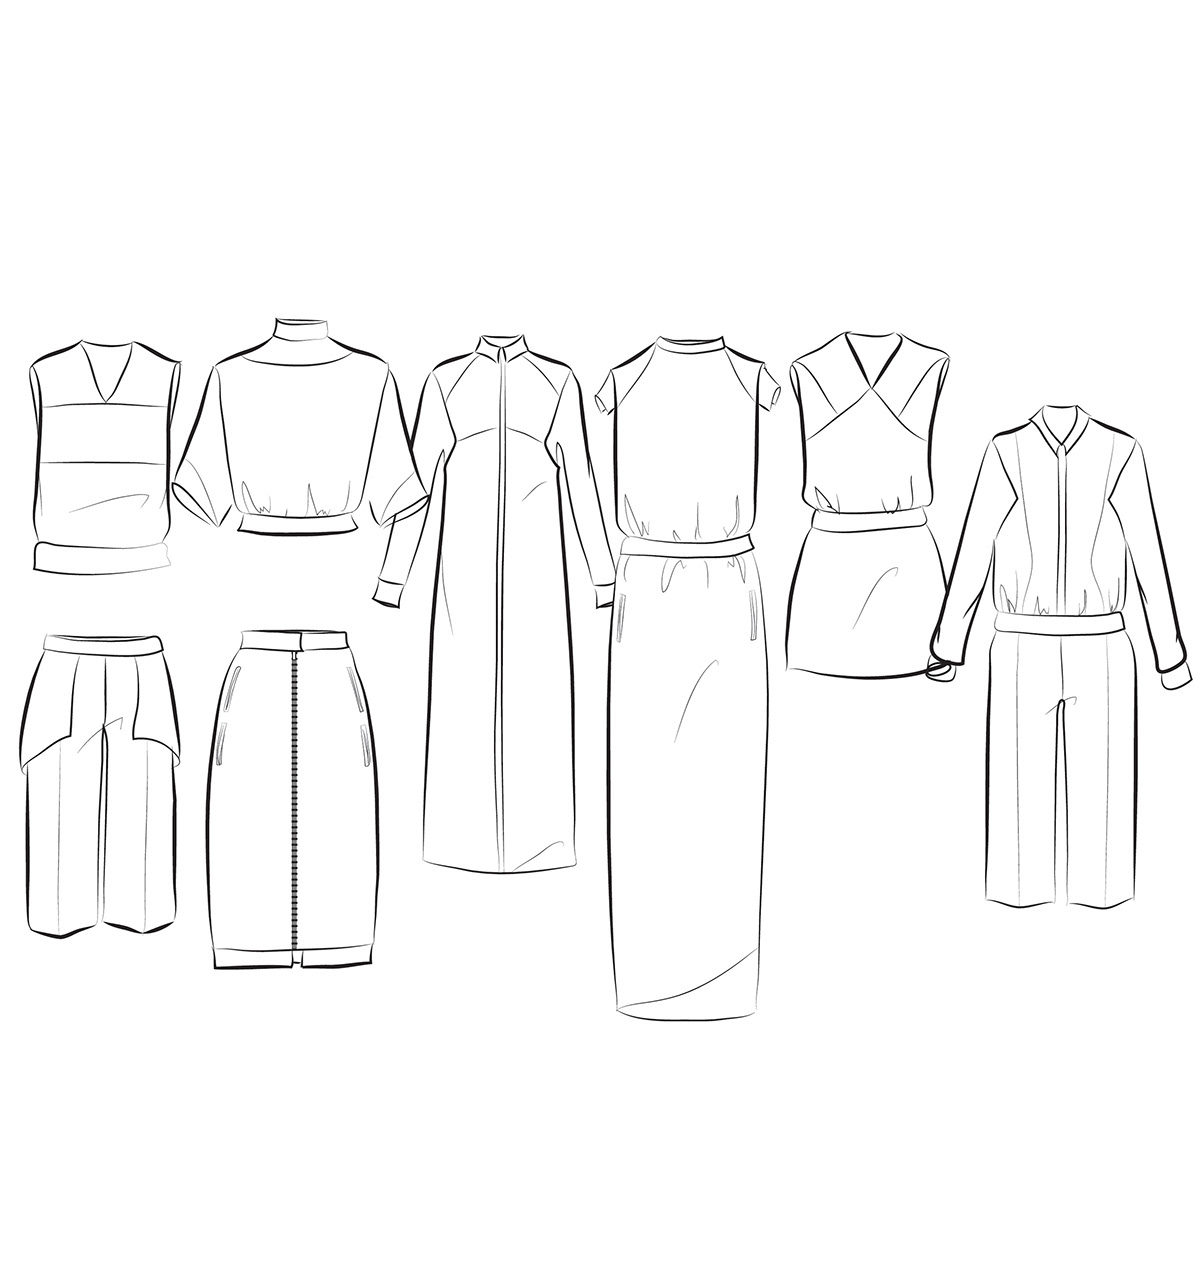 fashion design OCD Obsessive Compulsive fibers Collaboration monoprint black and white